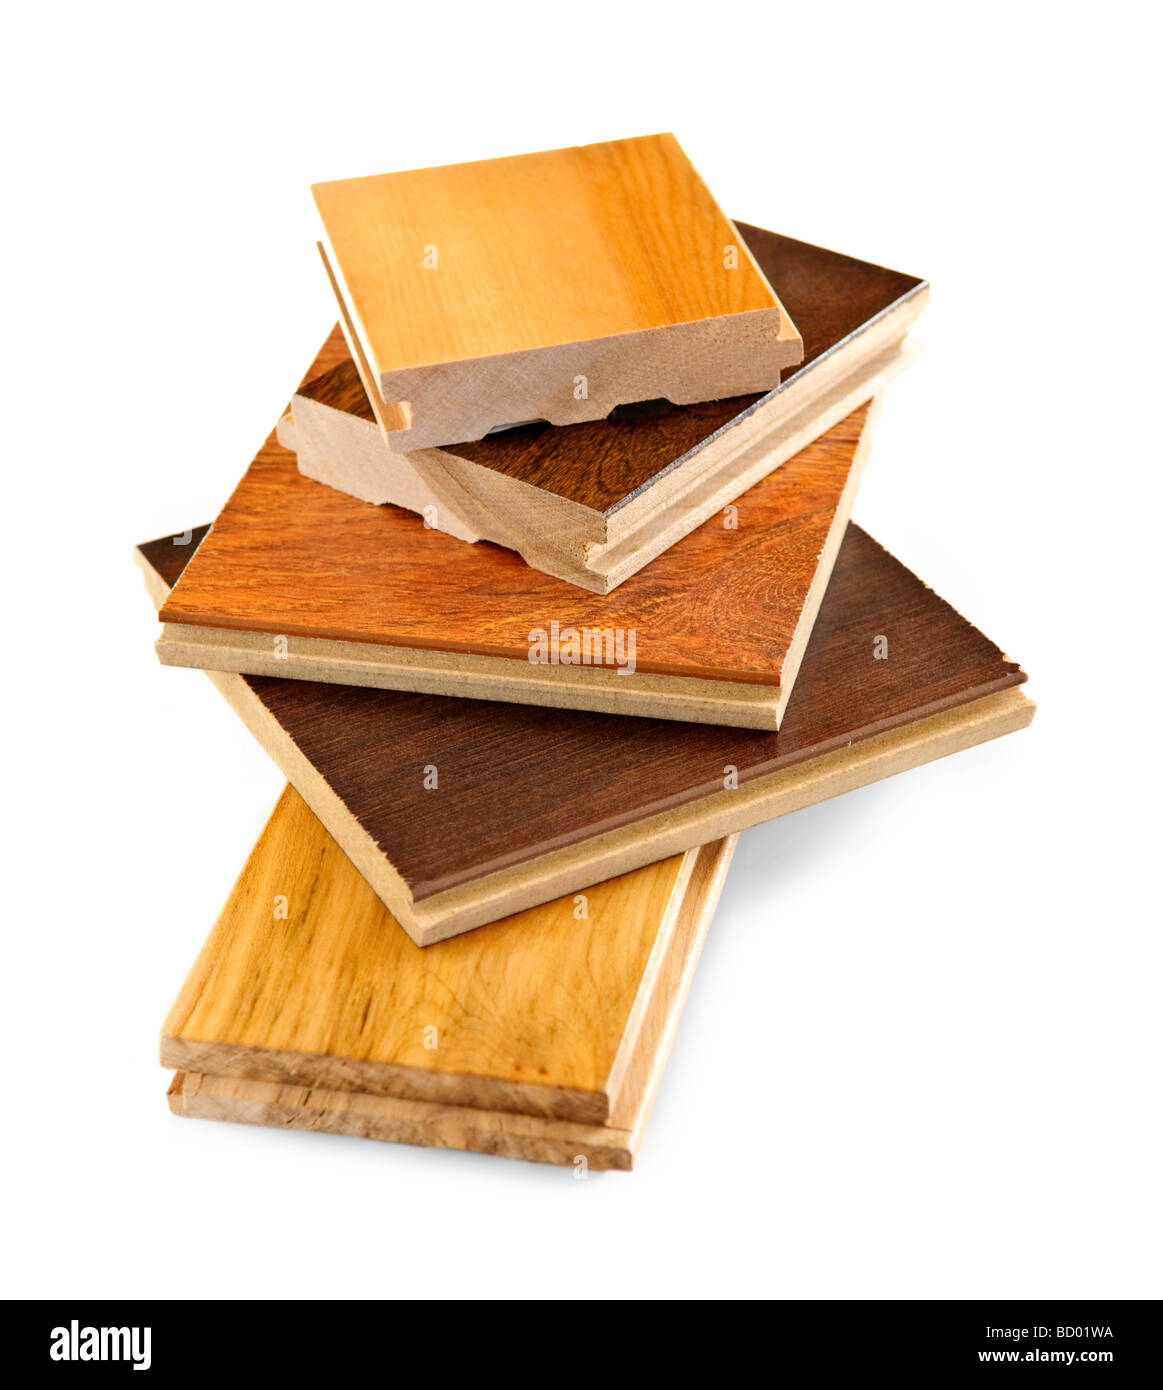 Isolato impilati prefiniti pavimenti in legno duro di campioni Foto Stock